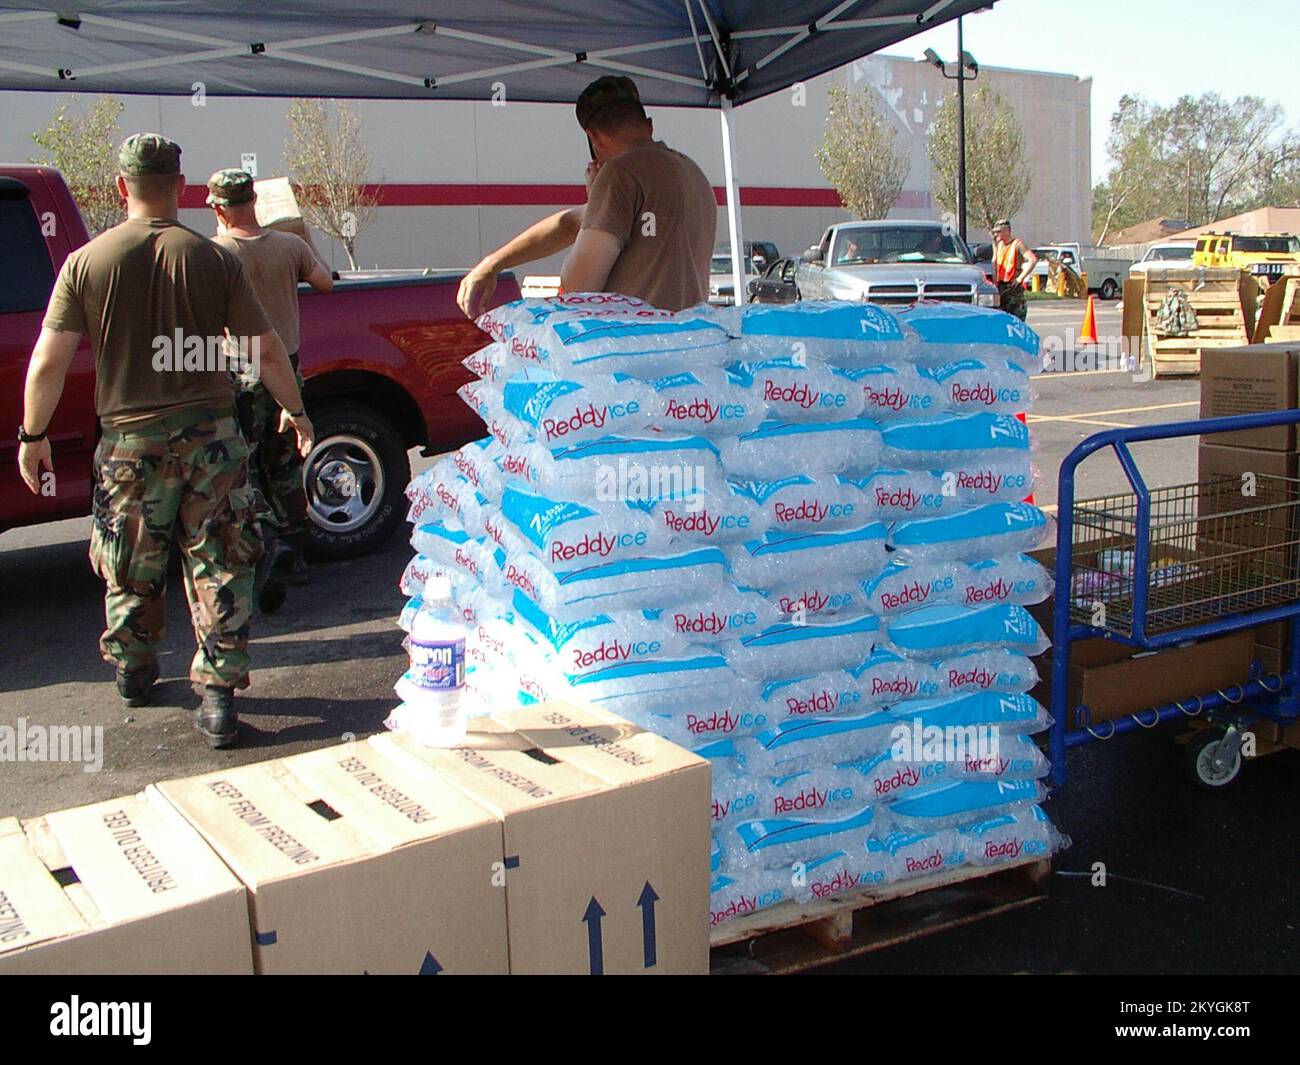 Uragano Katrina, New Orleans, il 2005 settembre - i membri della Guardia Nazionale della Louisiana distribuiscono ghiaccio e cibo forniti dalla FEMA alle vittime dell'uragano Katrina. MaryBeth Delarm/FEMA. Foto Stock